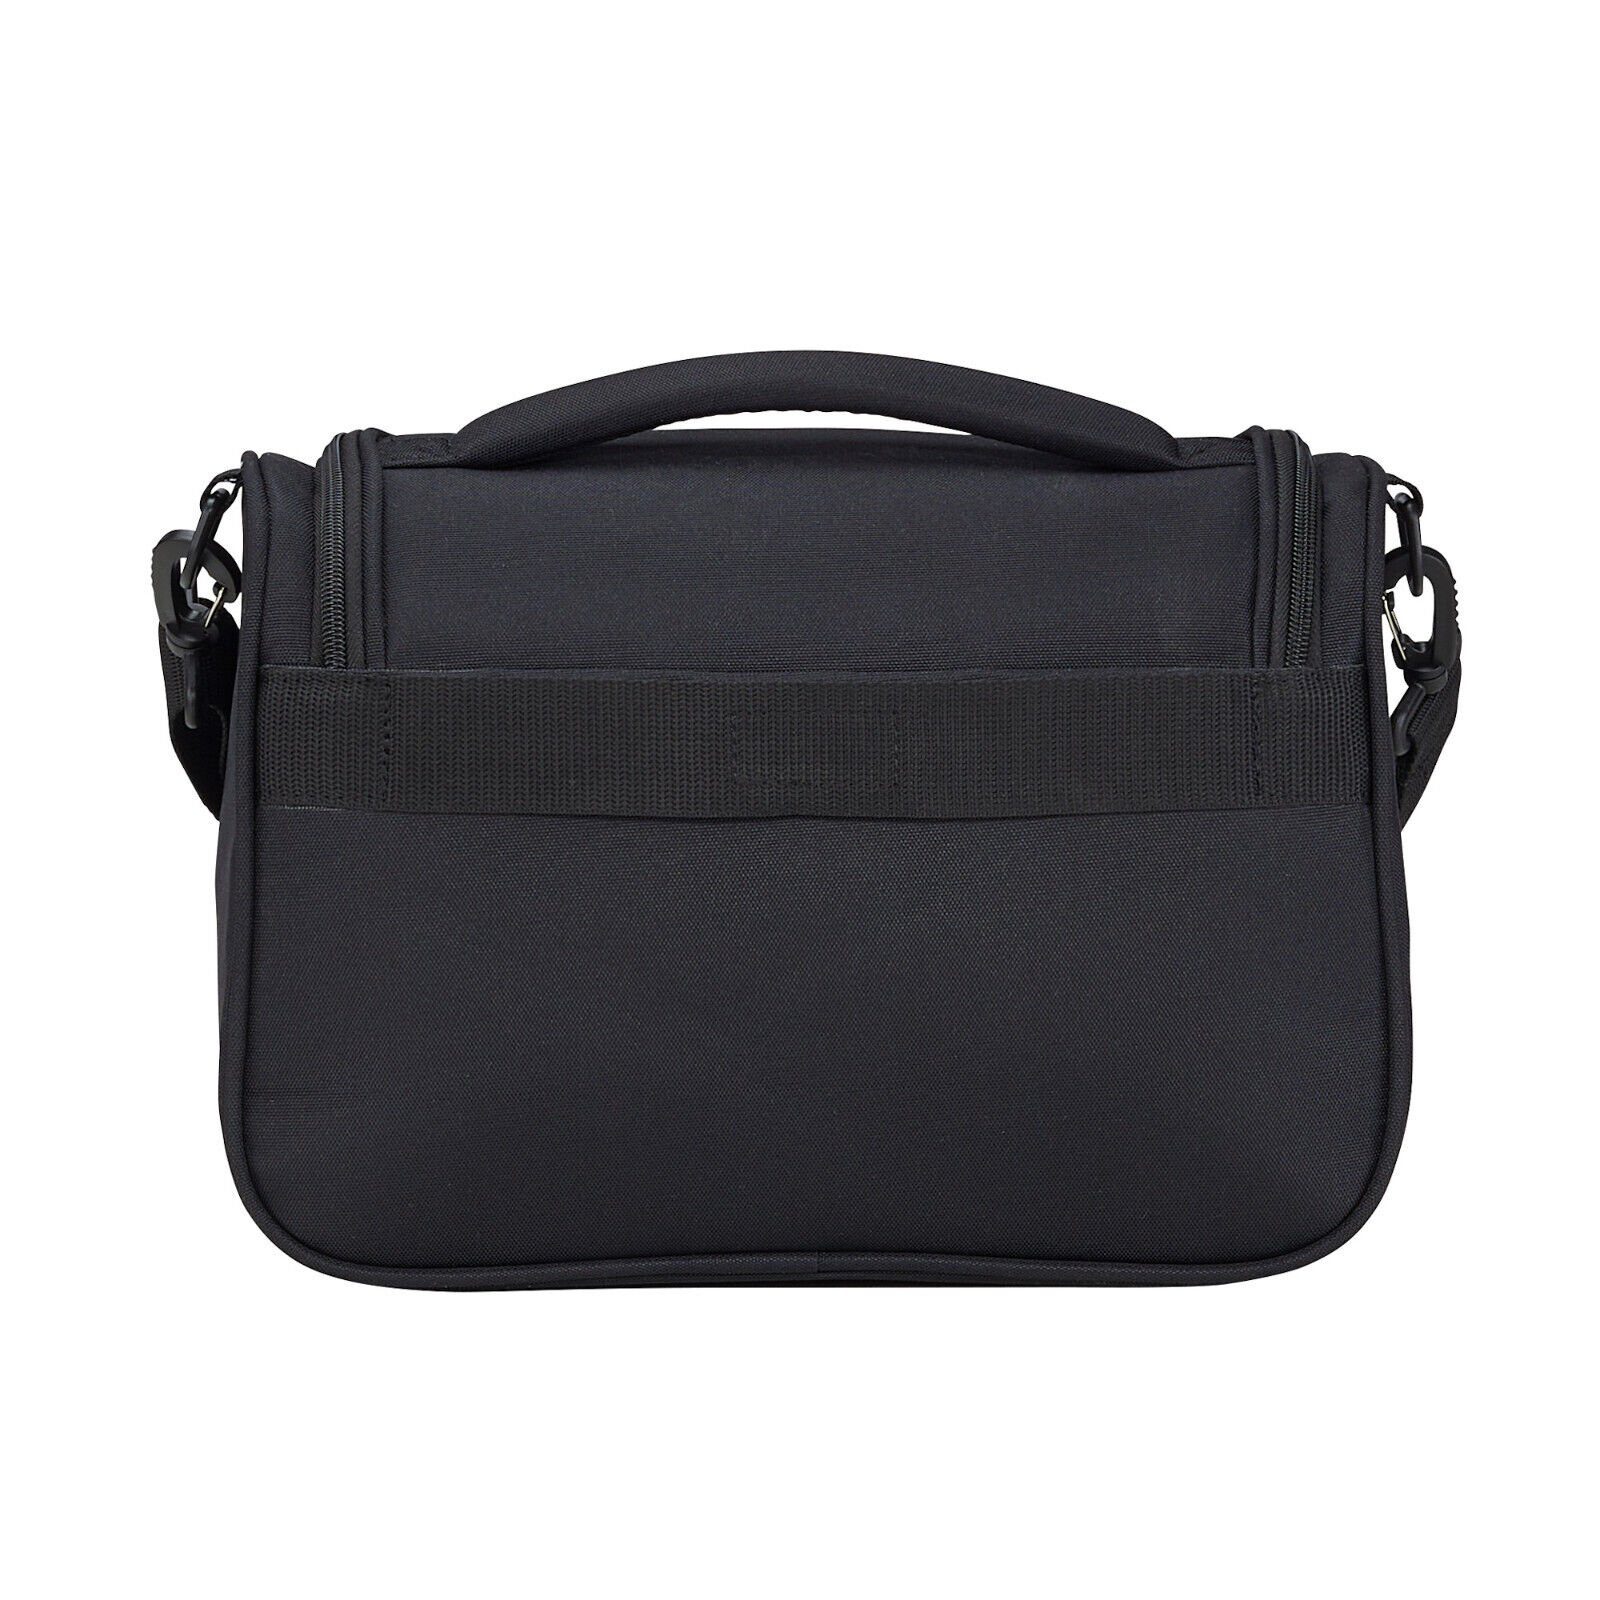 travelite Beautycase Chios schwarz Kulturtasche Koffer einen aufsteckbar, Handgepäck, auf mit Schultergurt